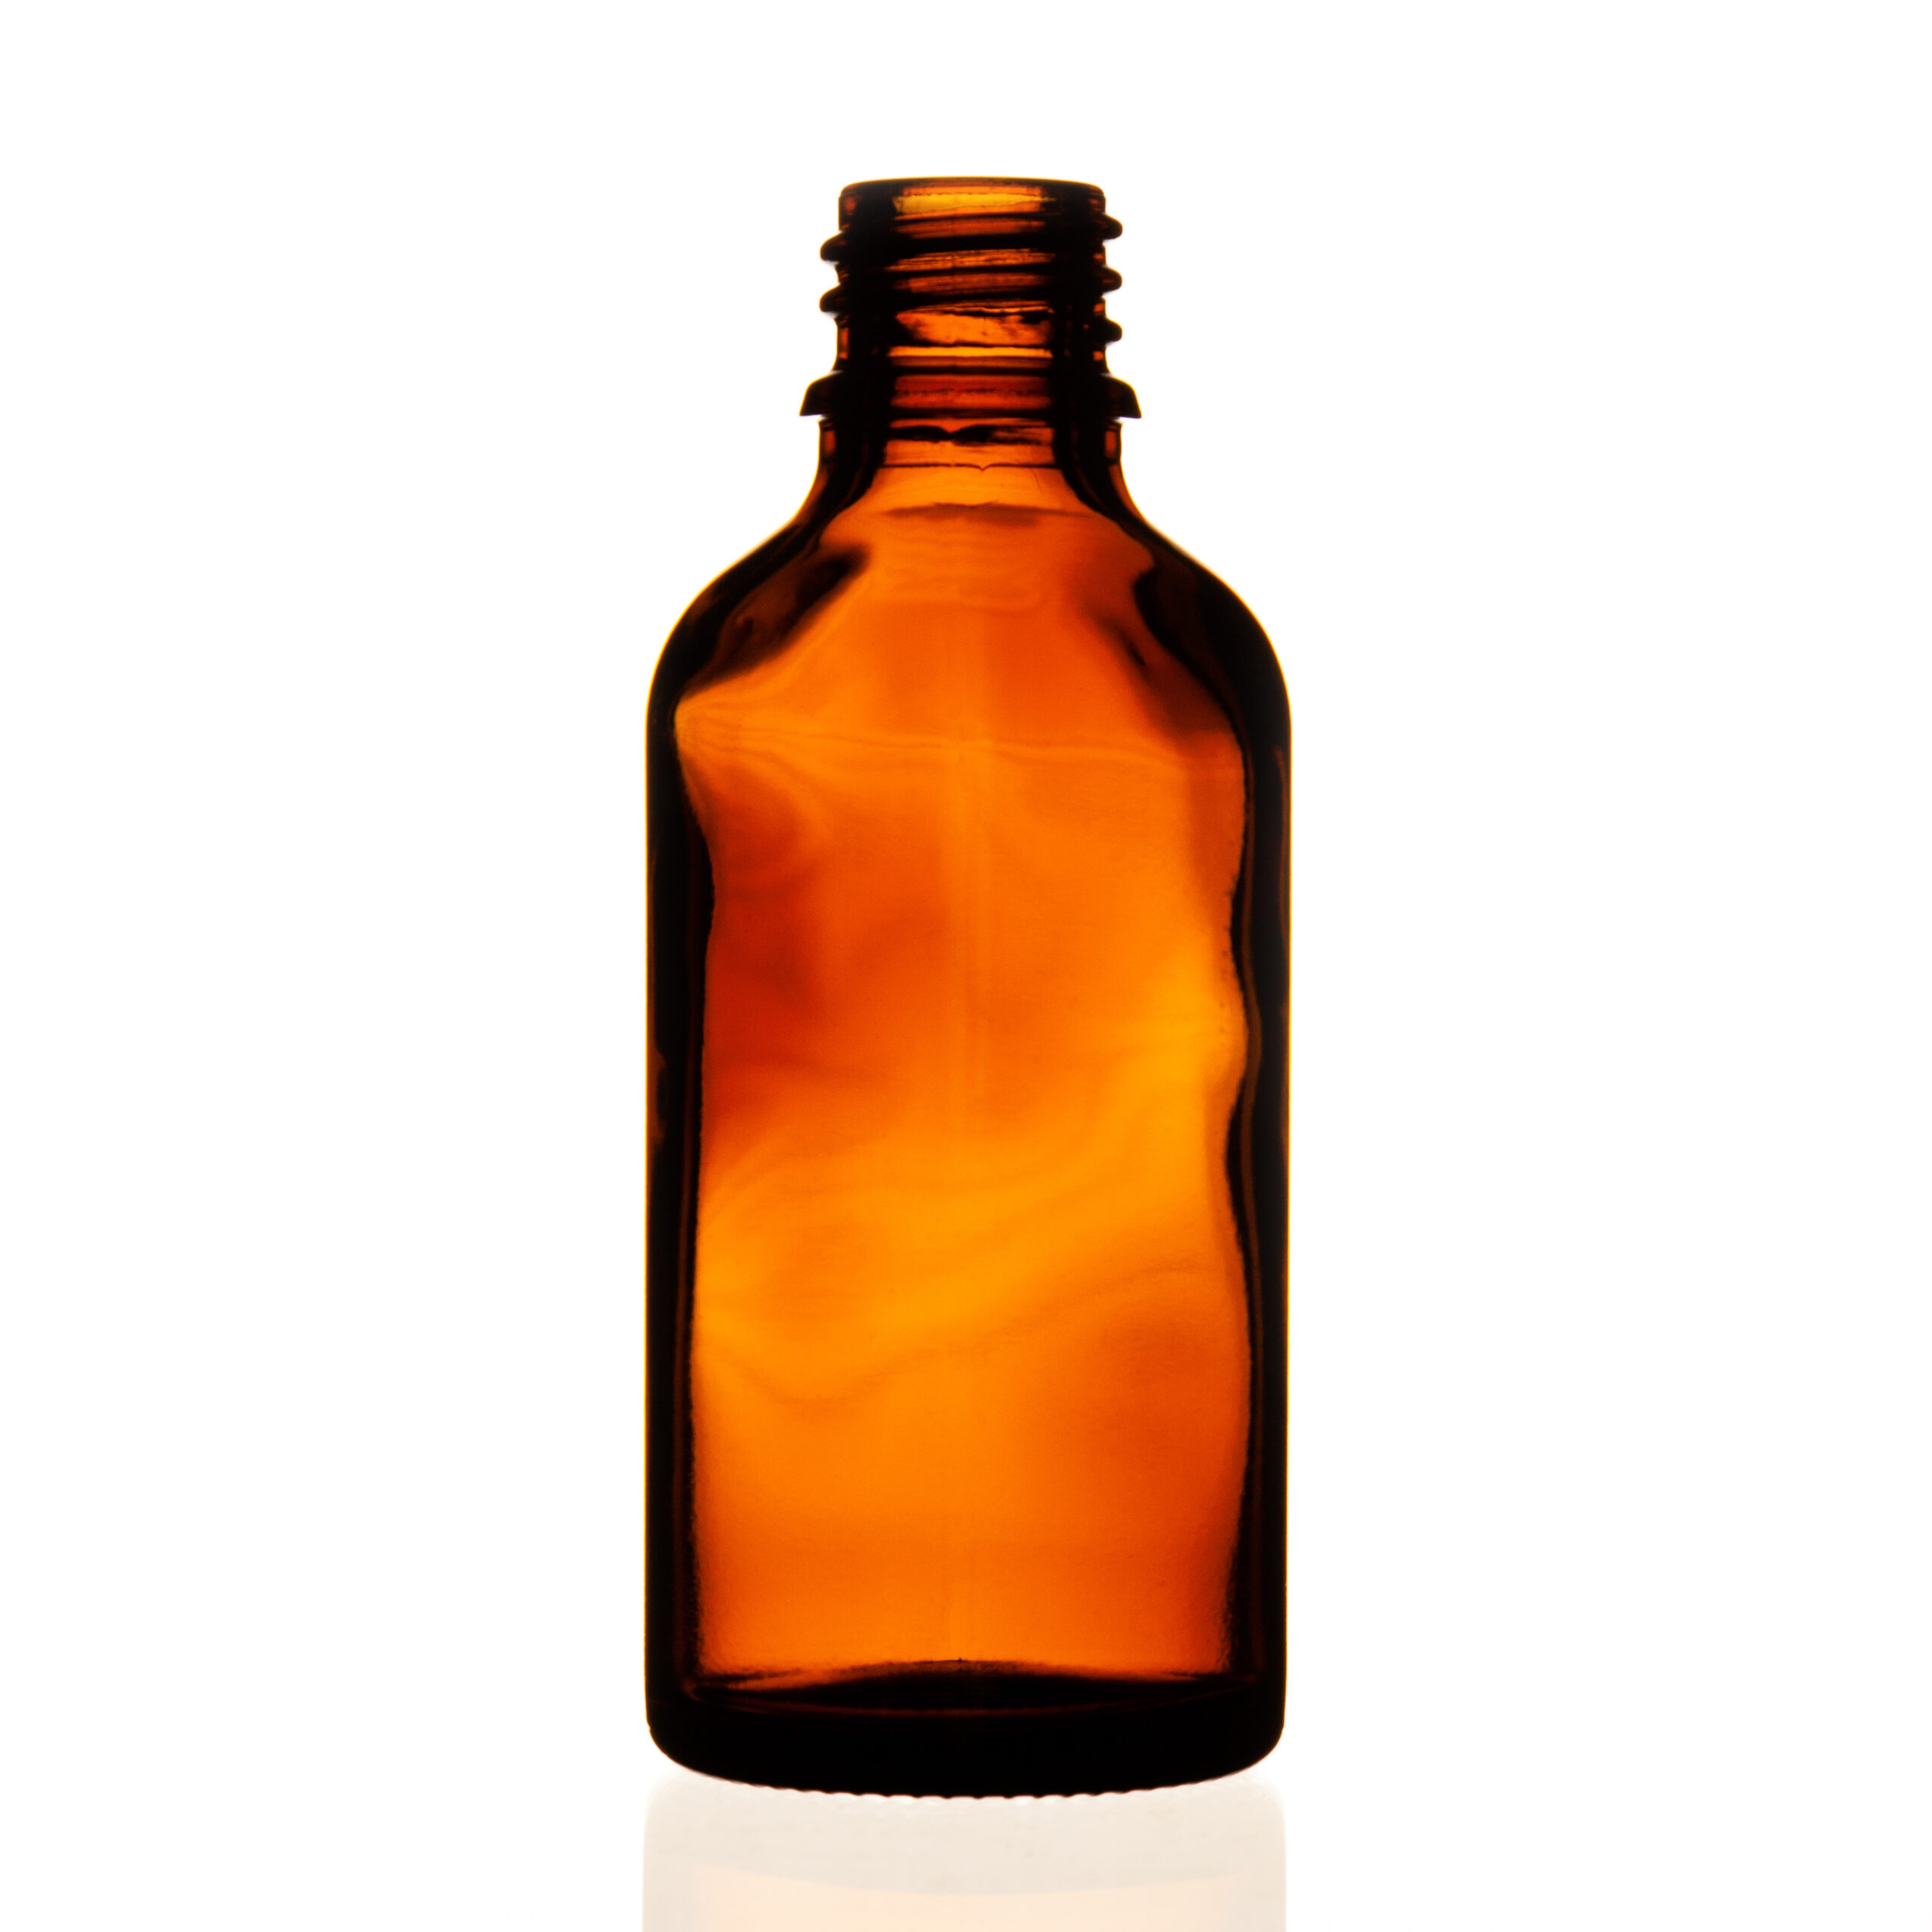 Type III DIN 18 topaz glass bottle 30ml